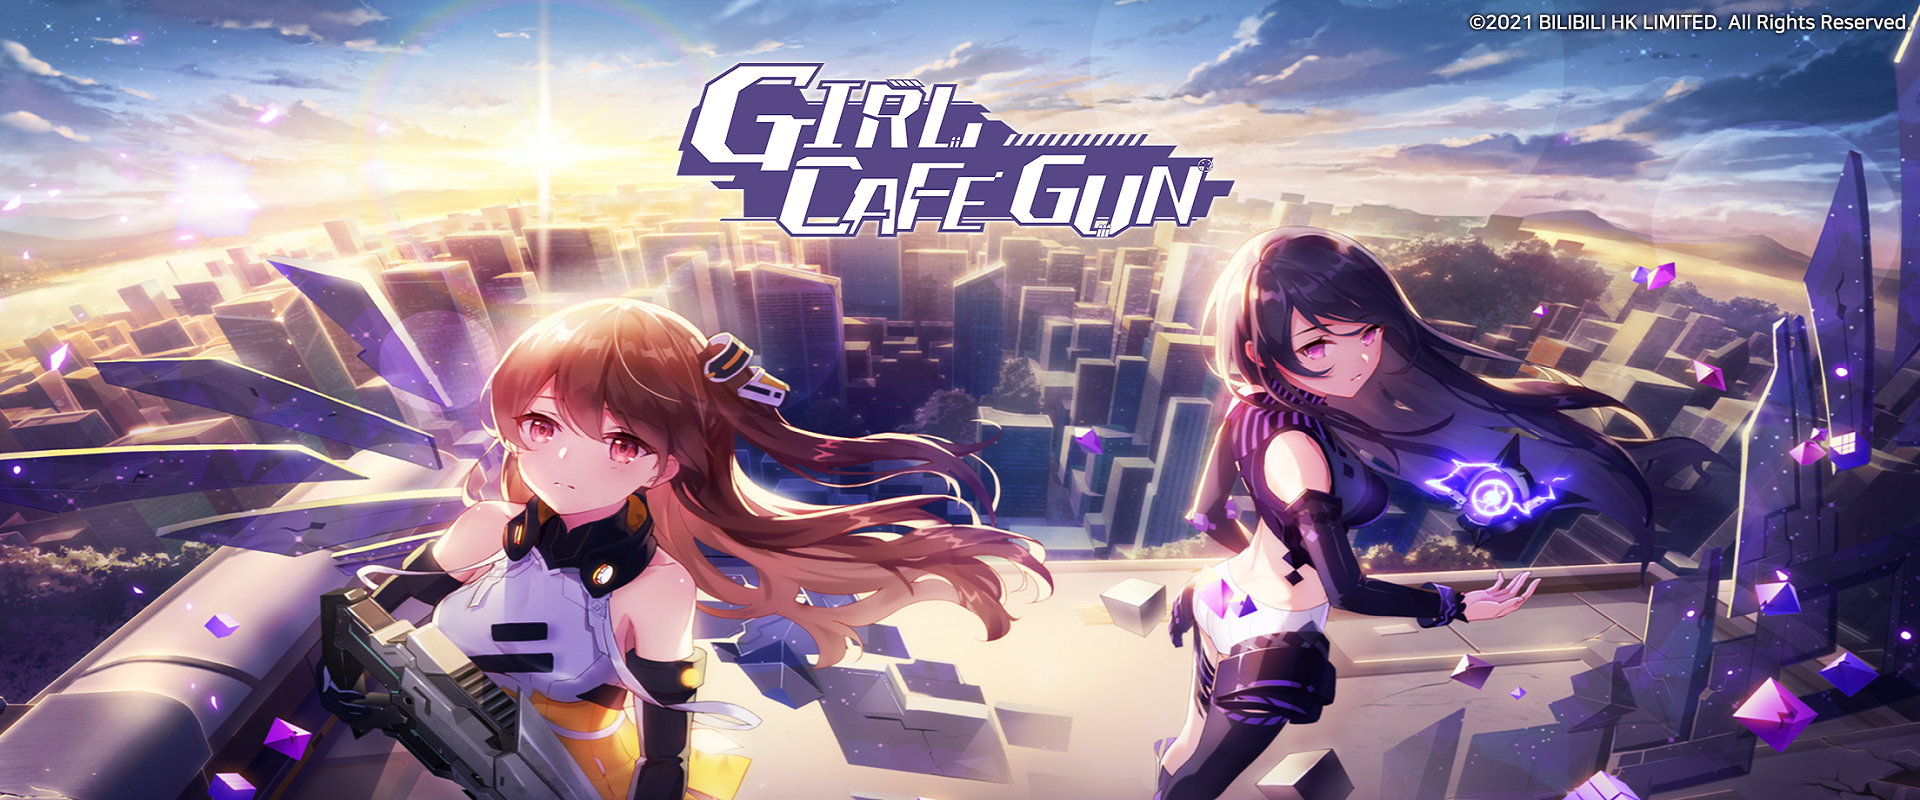 ดาวน์โหลดและเล่น Girl Cafe Gun บน PC ด้วย NoxPlayer โปรแกรมจำลองฟรี